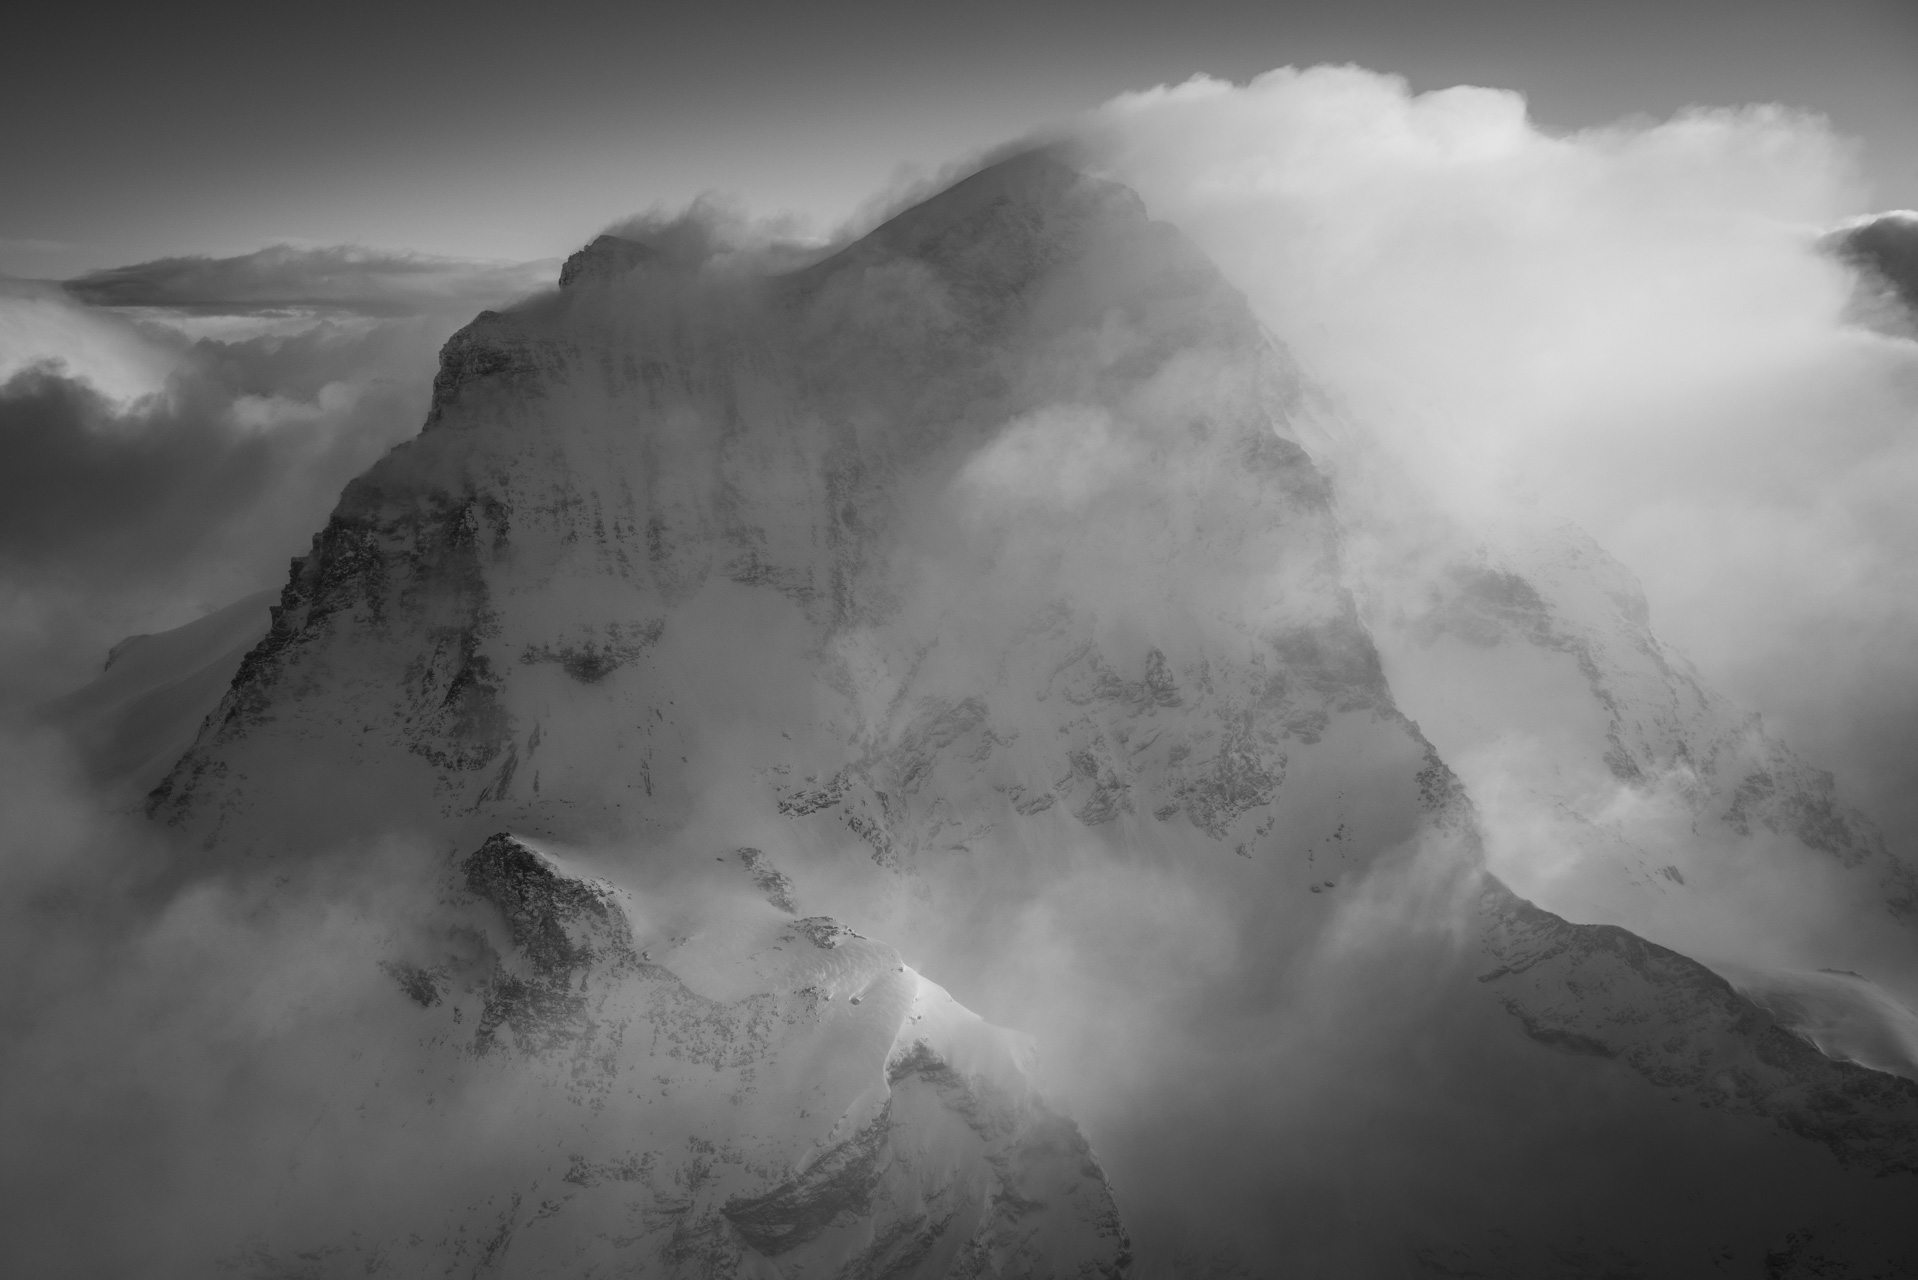 Mer de nuage sur les sommets enneigés noir et blanc du Grand Combin des montagnes des Alpes Suisses de Verbier